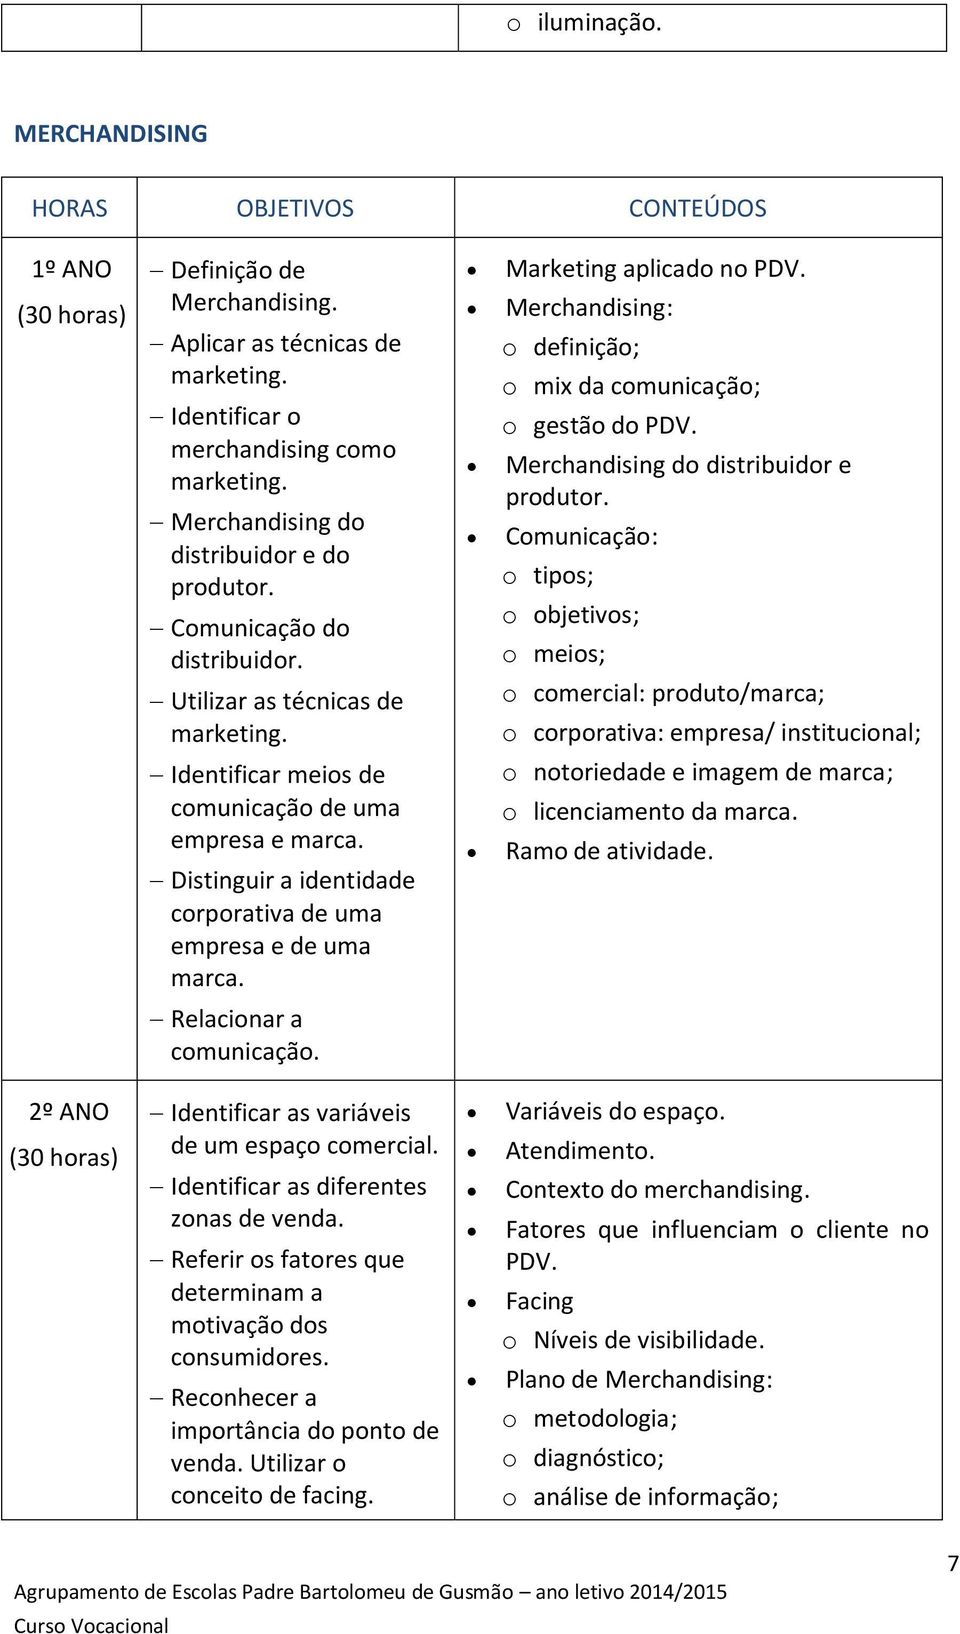 Merchandising: o definição; o mix da comunicação; o gestão do PDV. Merchandising do distribuidor e produtor.